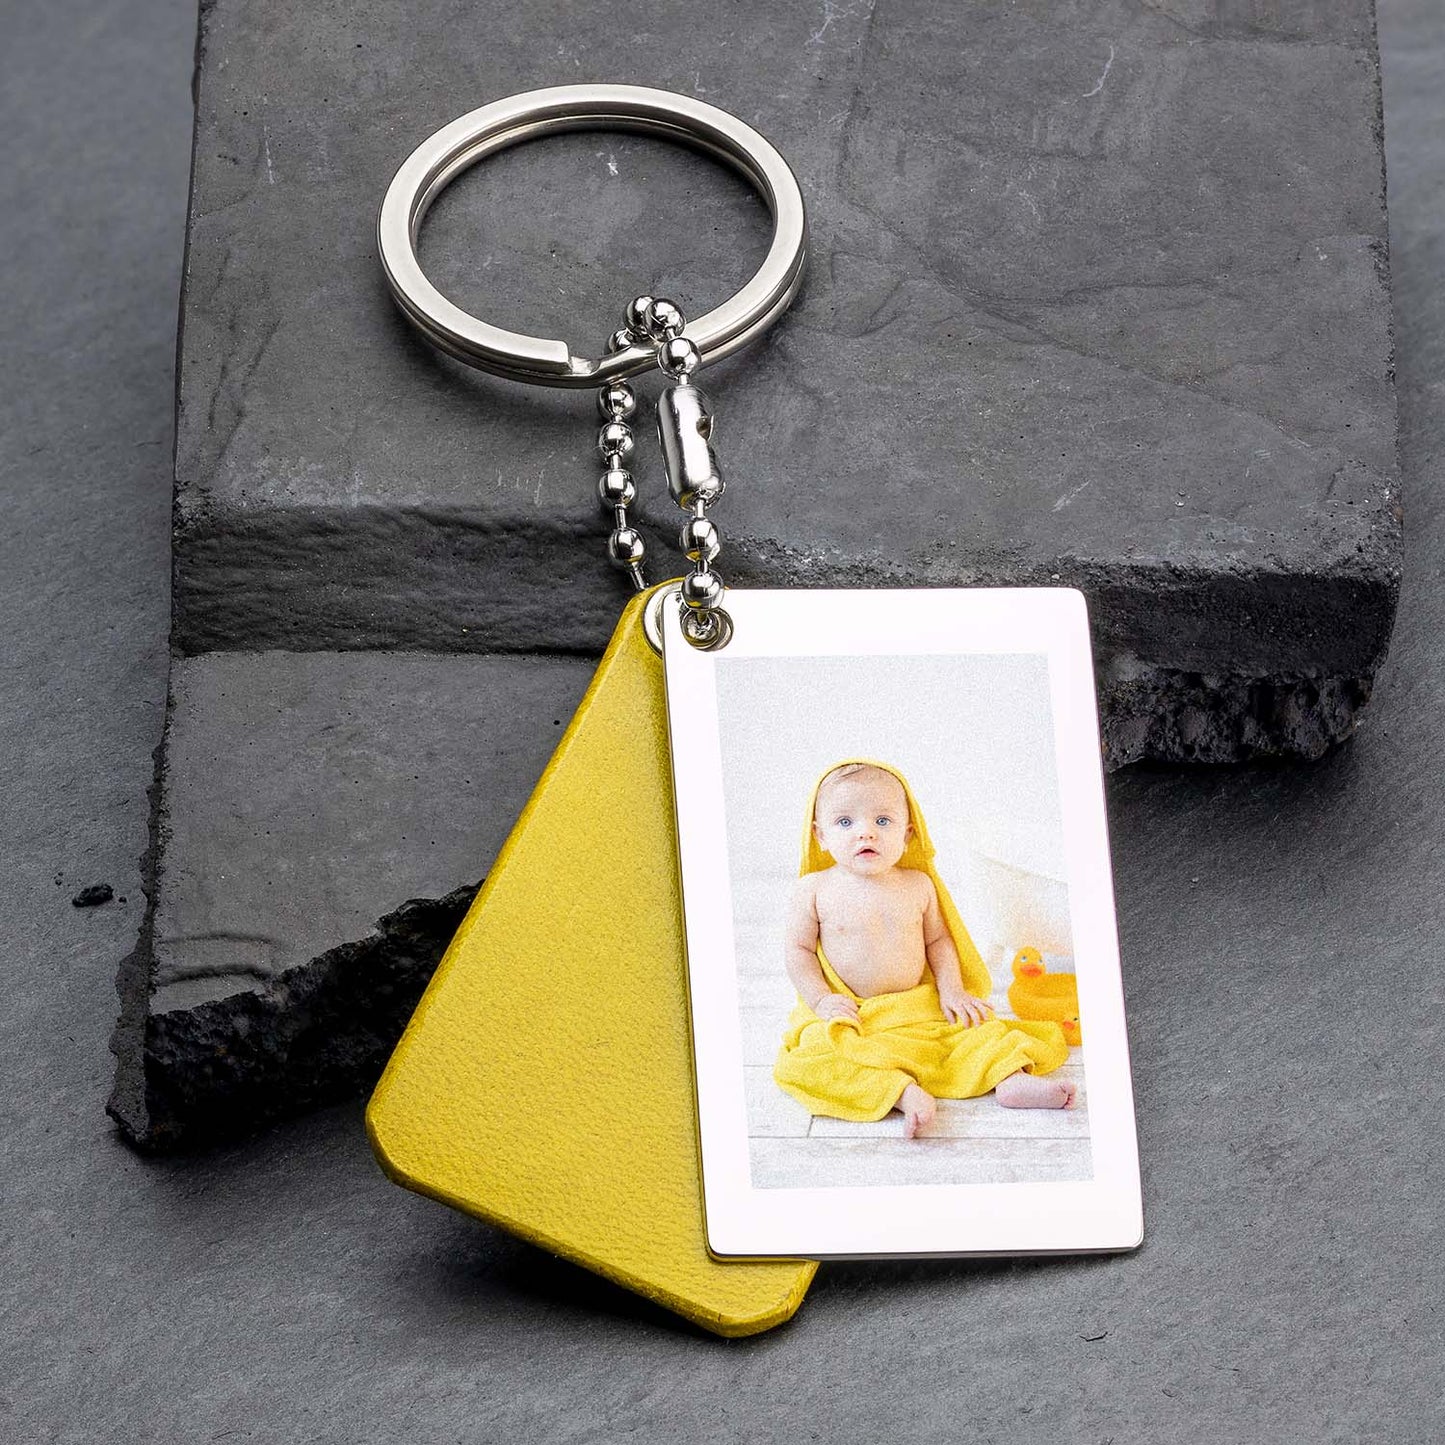 Fotoschlüsselanhänger in Gelbem Leder - Personalisiert mit Ihrem Bild - seQua.Shop